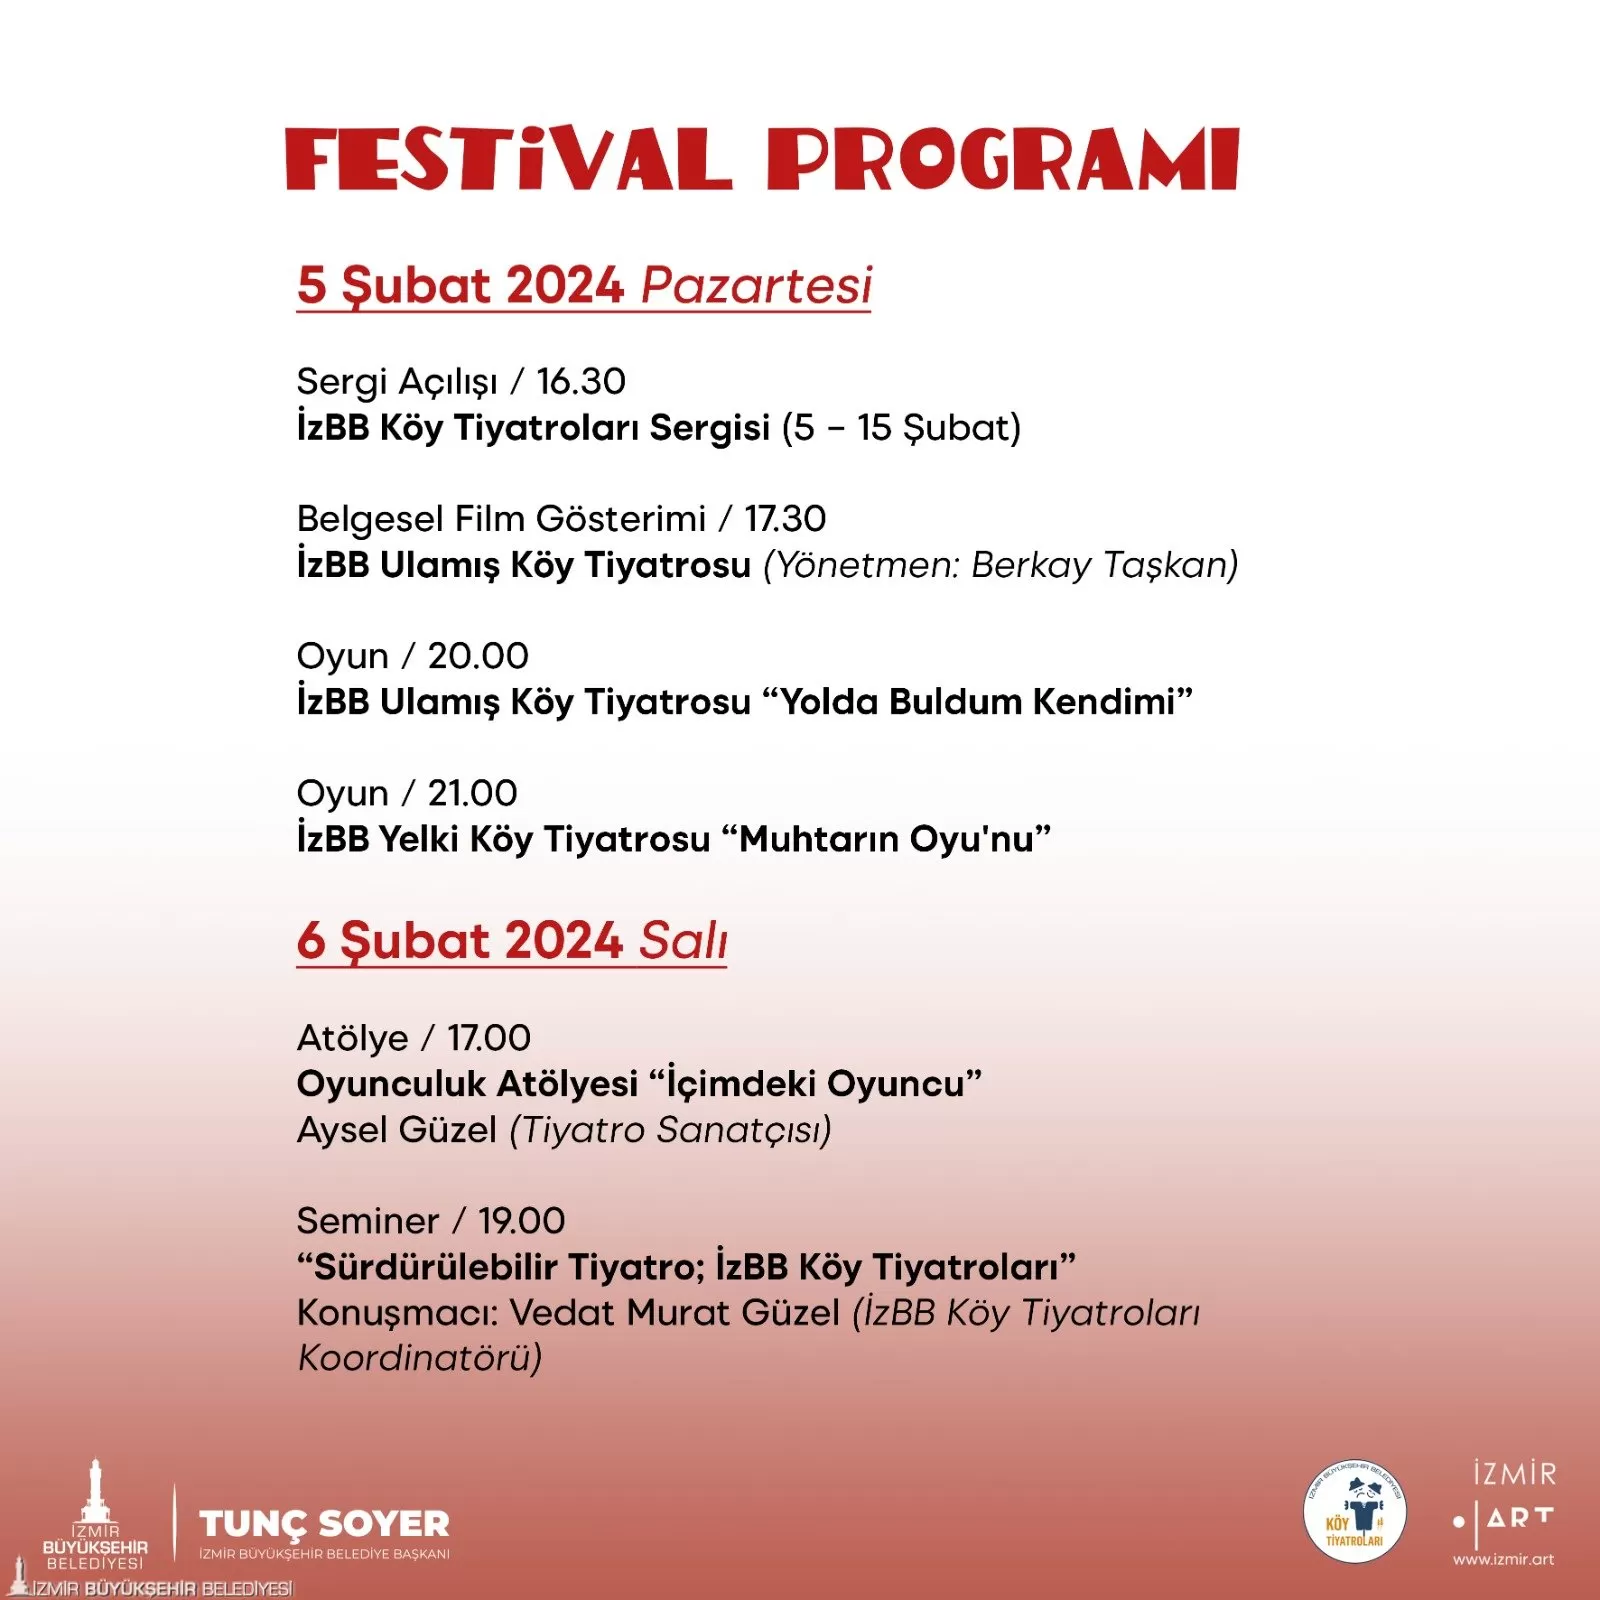 İzmir Büyükşehir Belediyesi Köy Tiyatroları'nın 2. Festivali 5-10 Şubat tarihleri arasında Kültürpark İzmir Sanat Merkezi'nde gerçekleşecek.